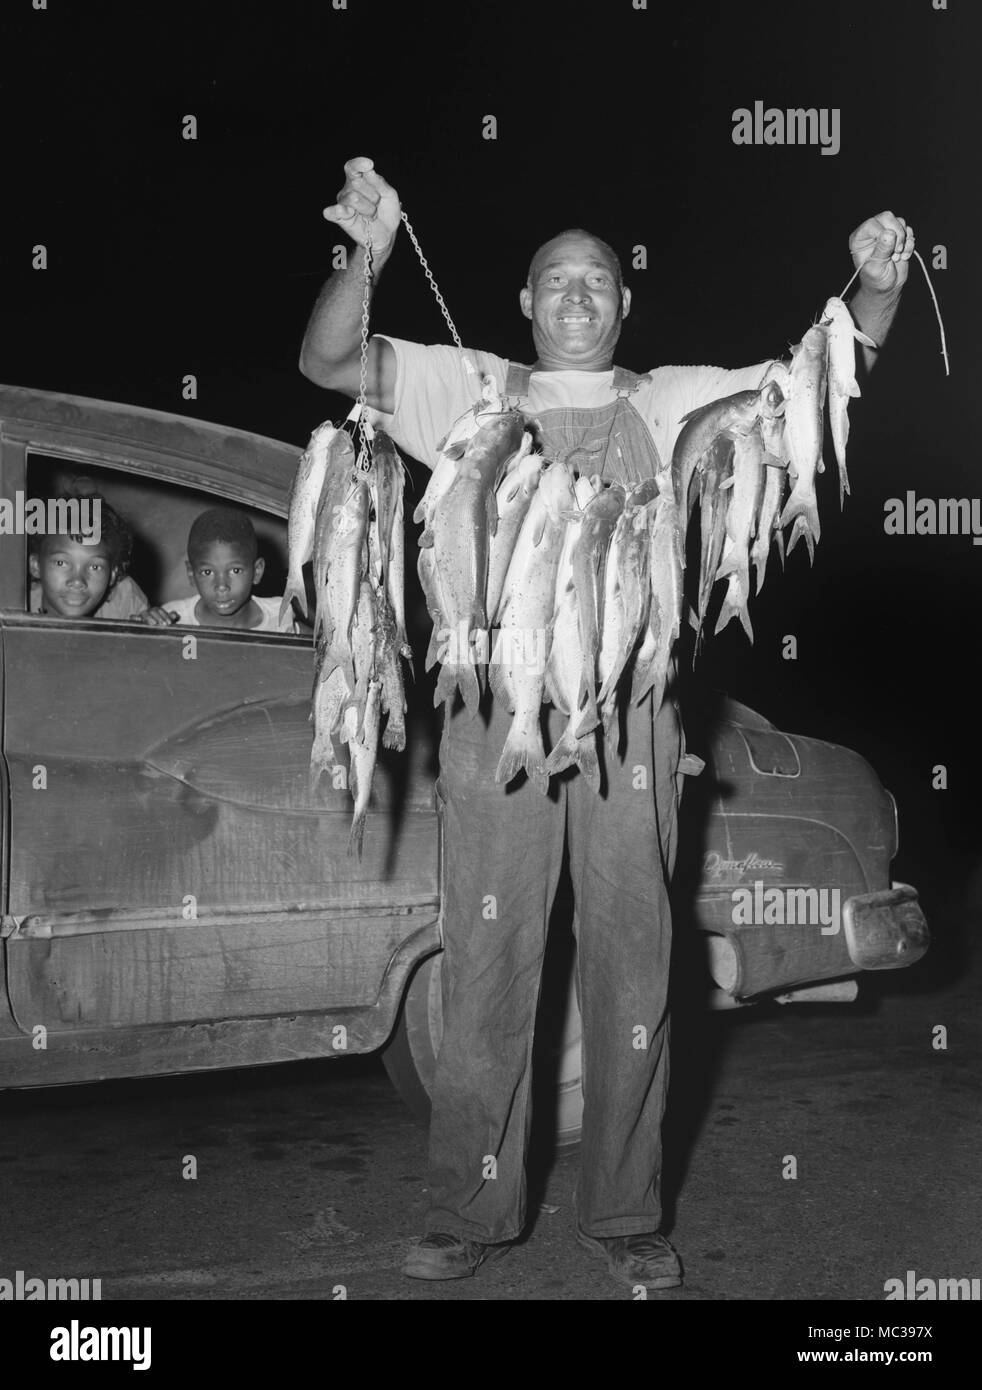 Vater zeigt stolz einen Stringer von Welsen, während sich die Kinder im Getriebe Dynaflow Buick Automobil warten, Ca. 1963. Stockfoto